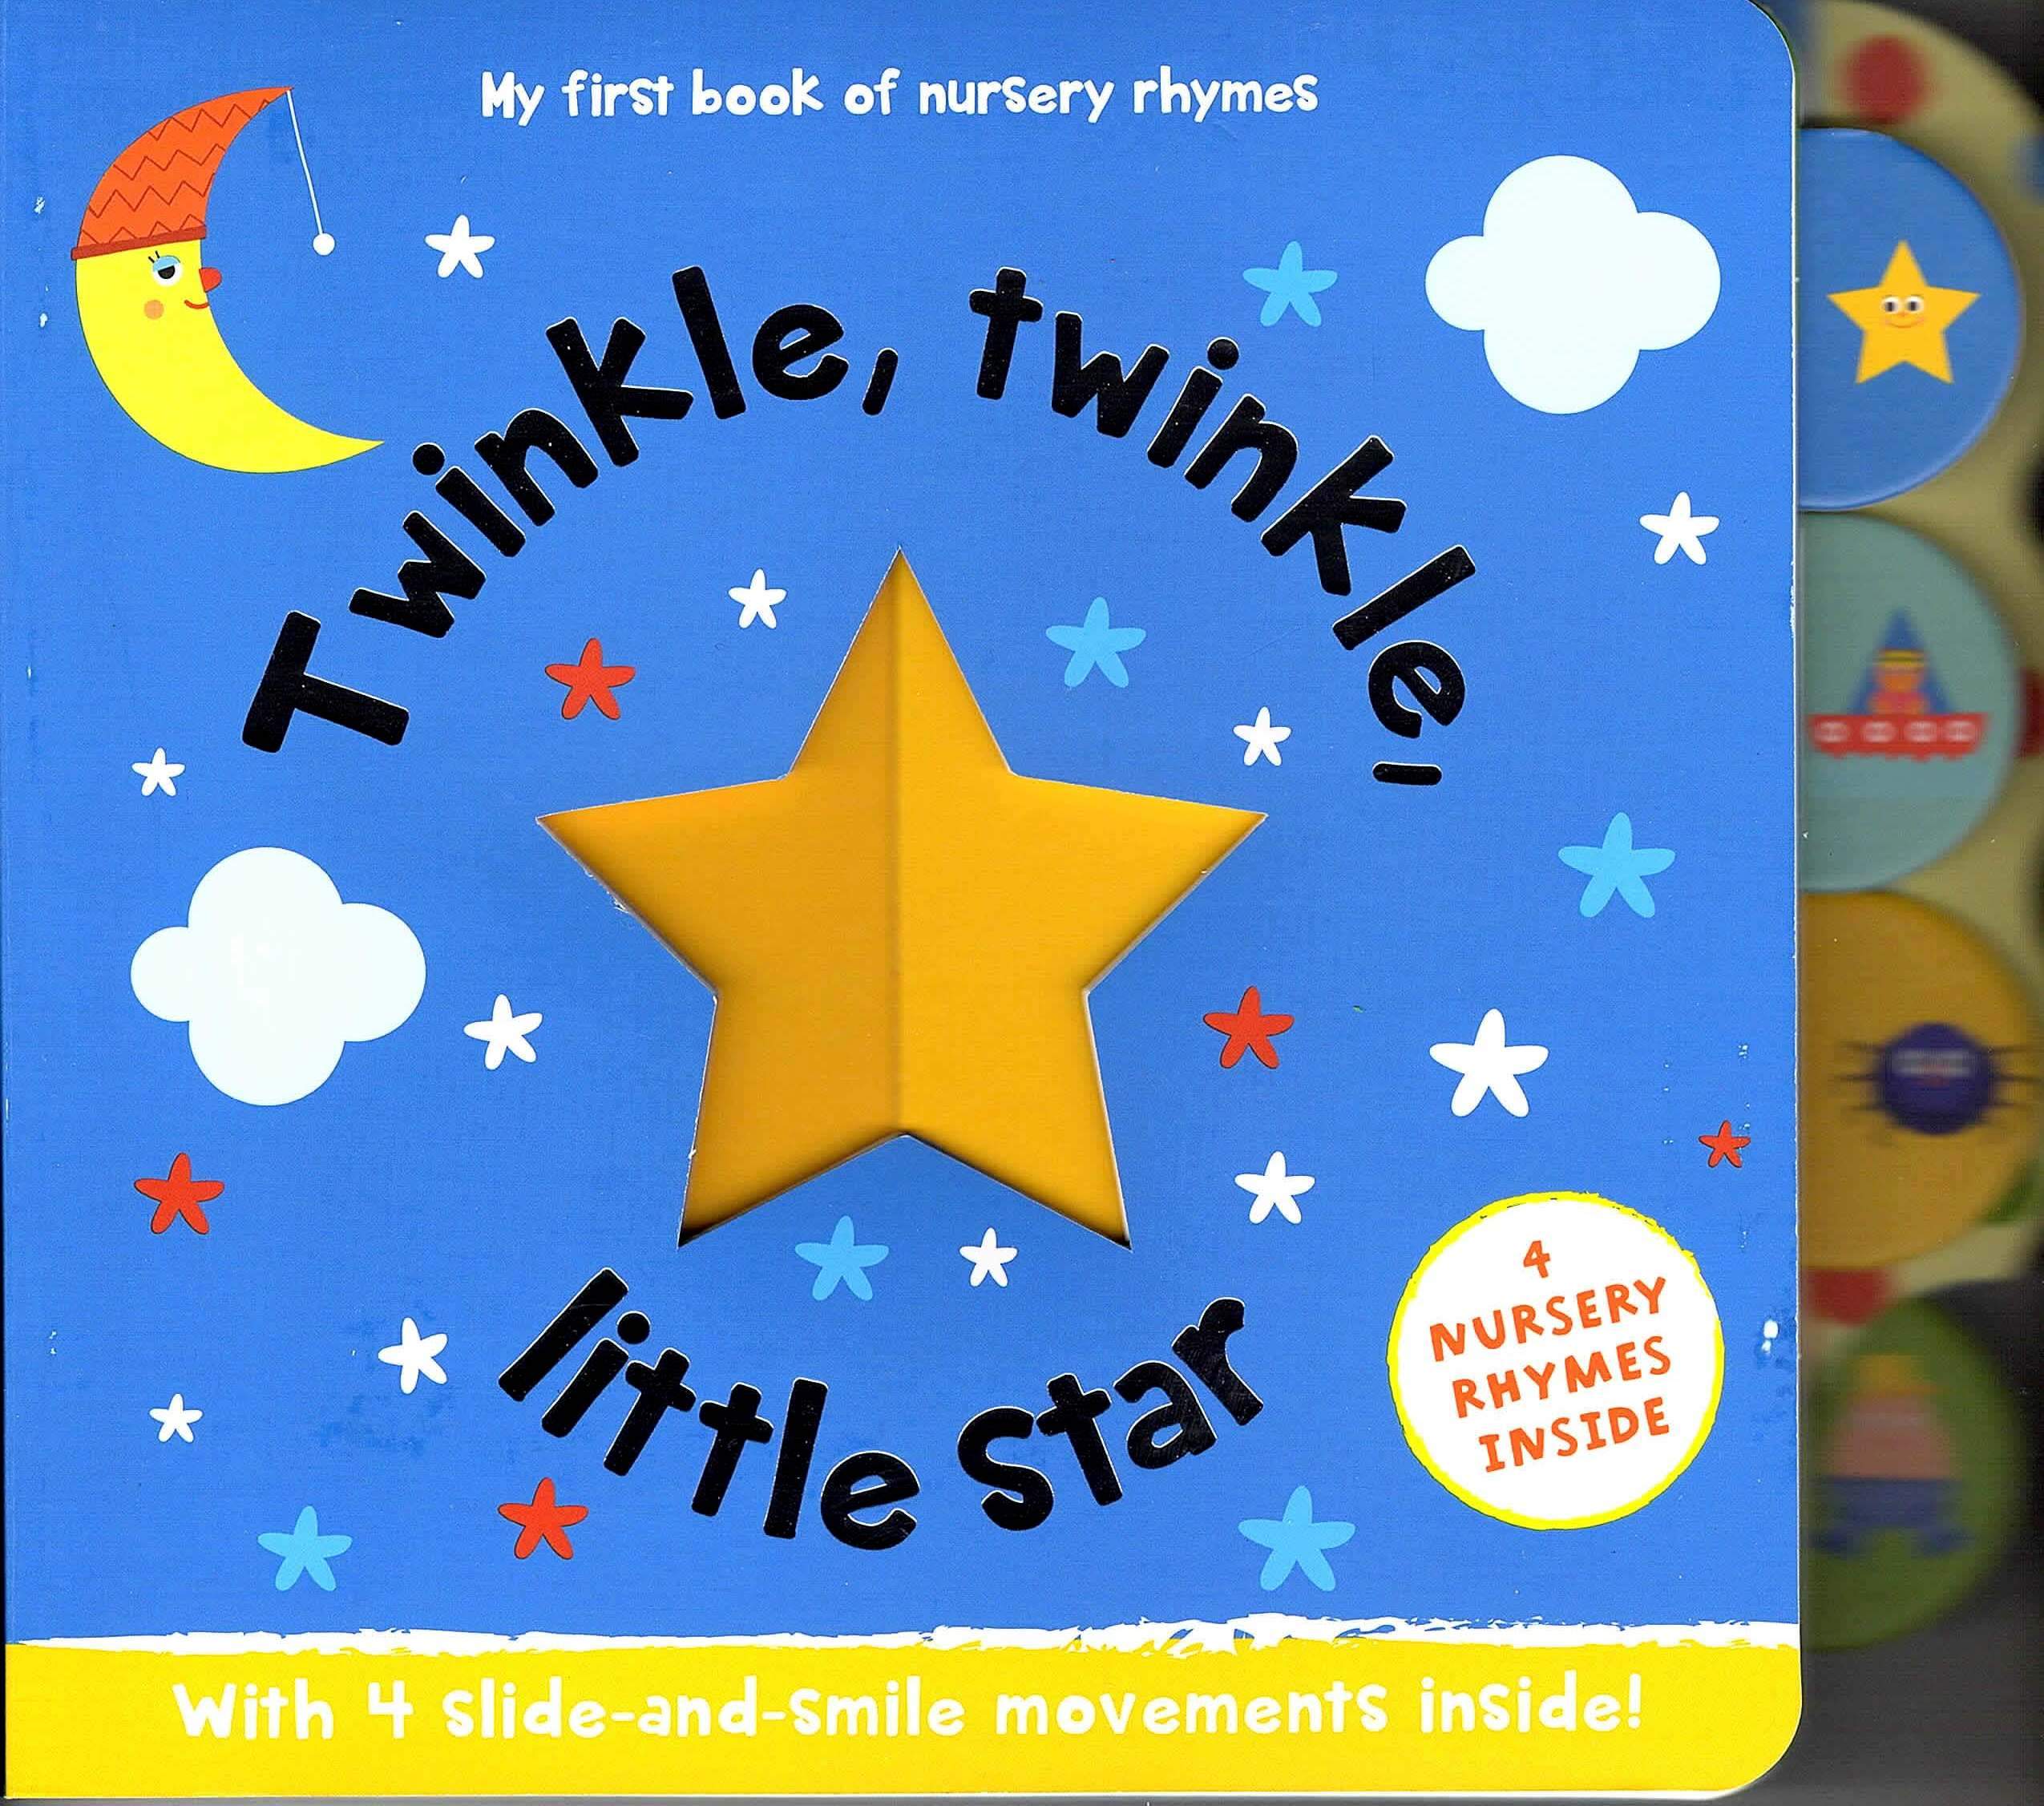 Twinkle, Twinkle, Little Star (Paperback)